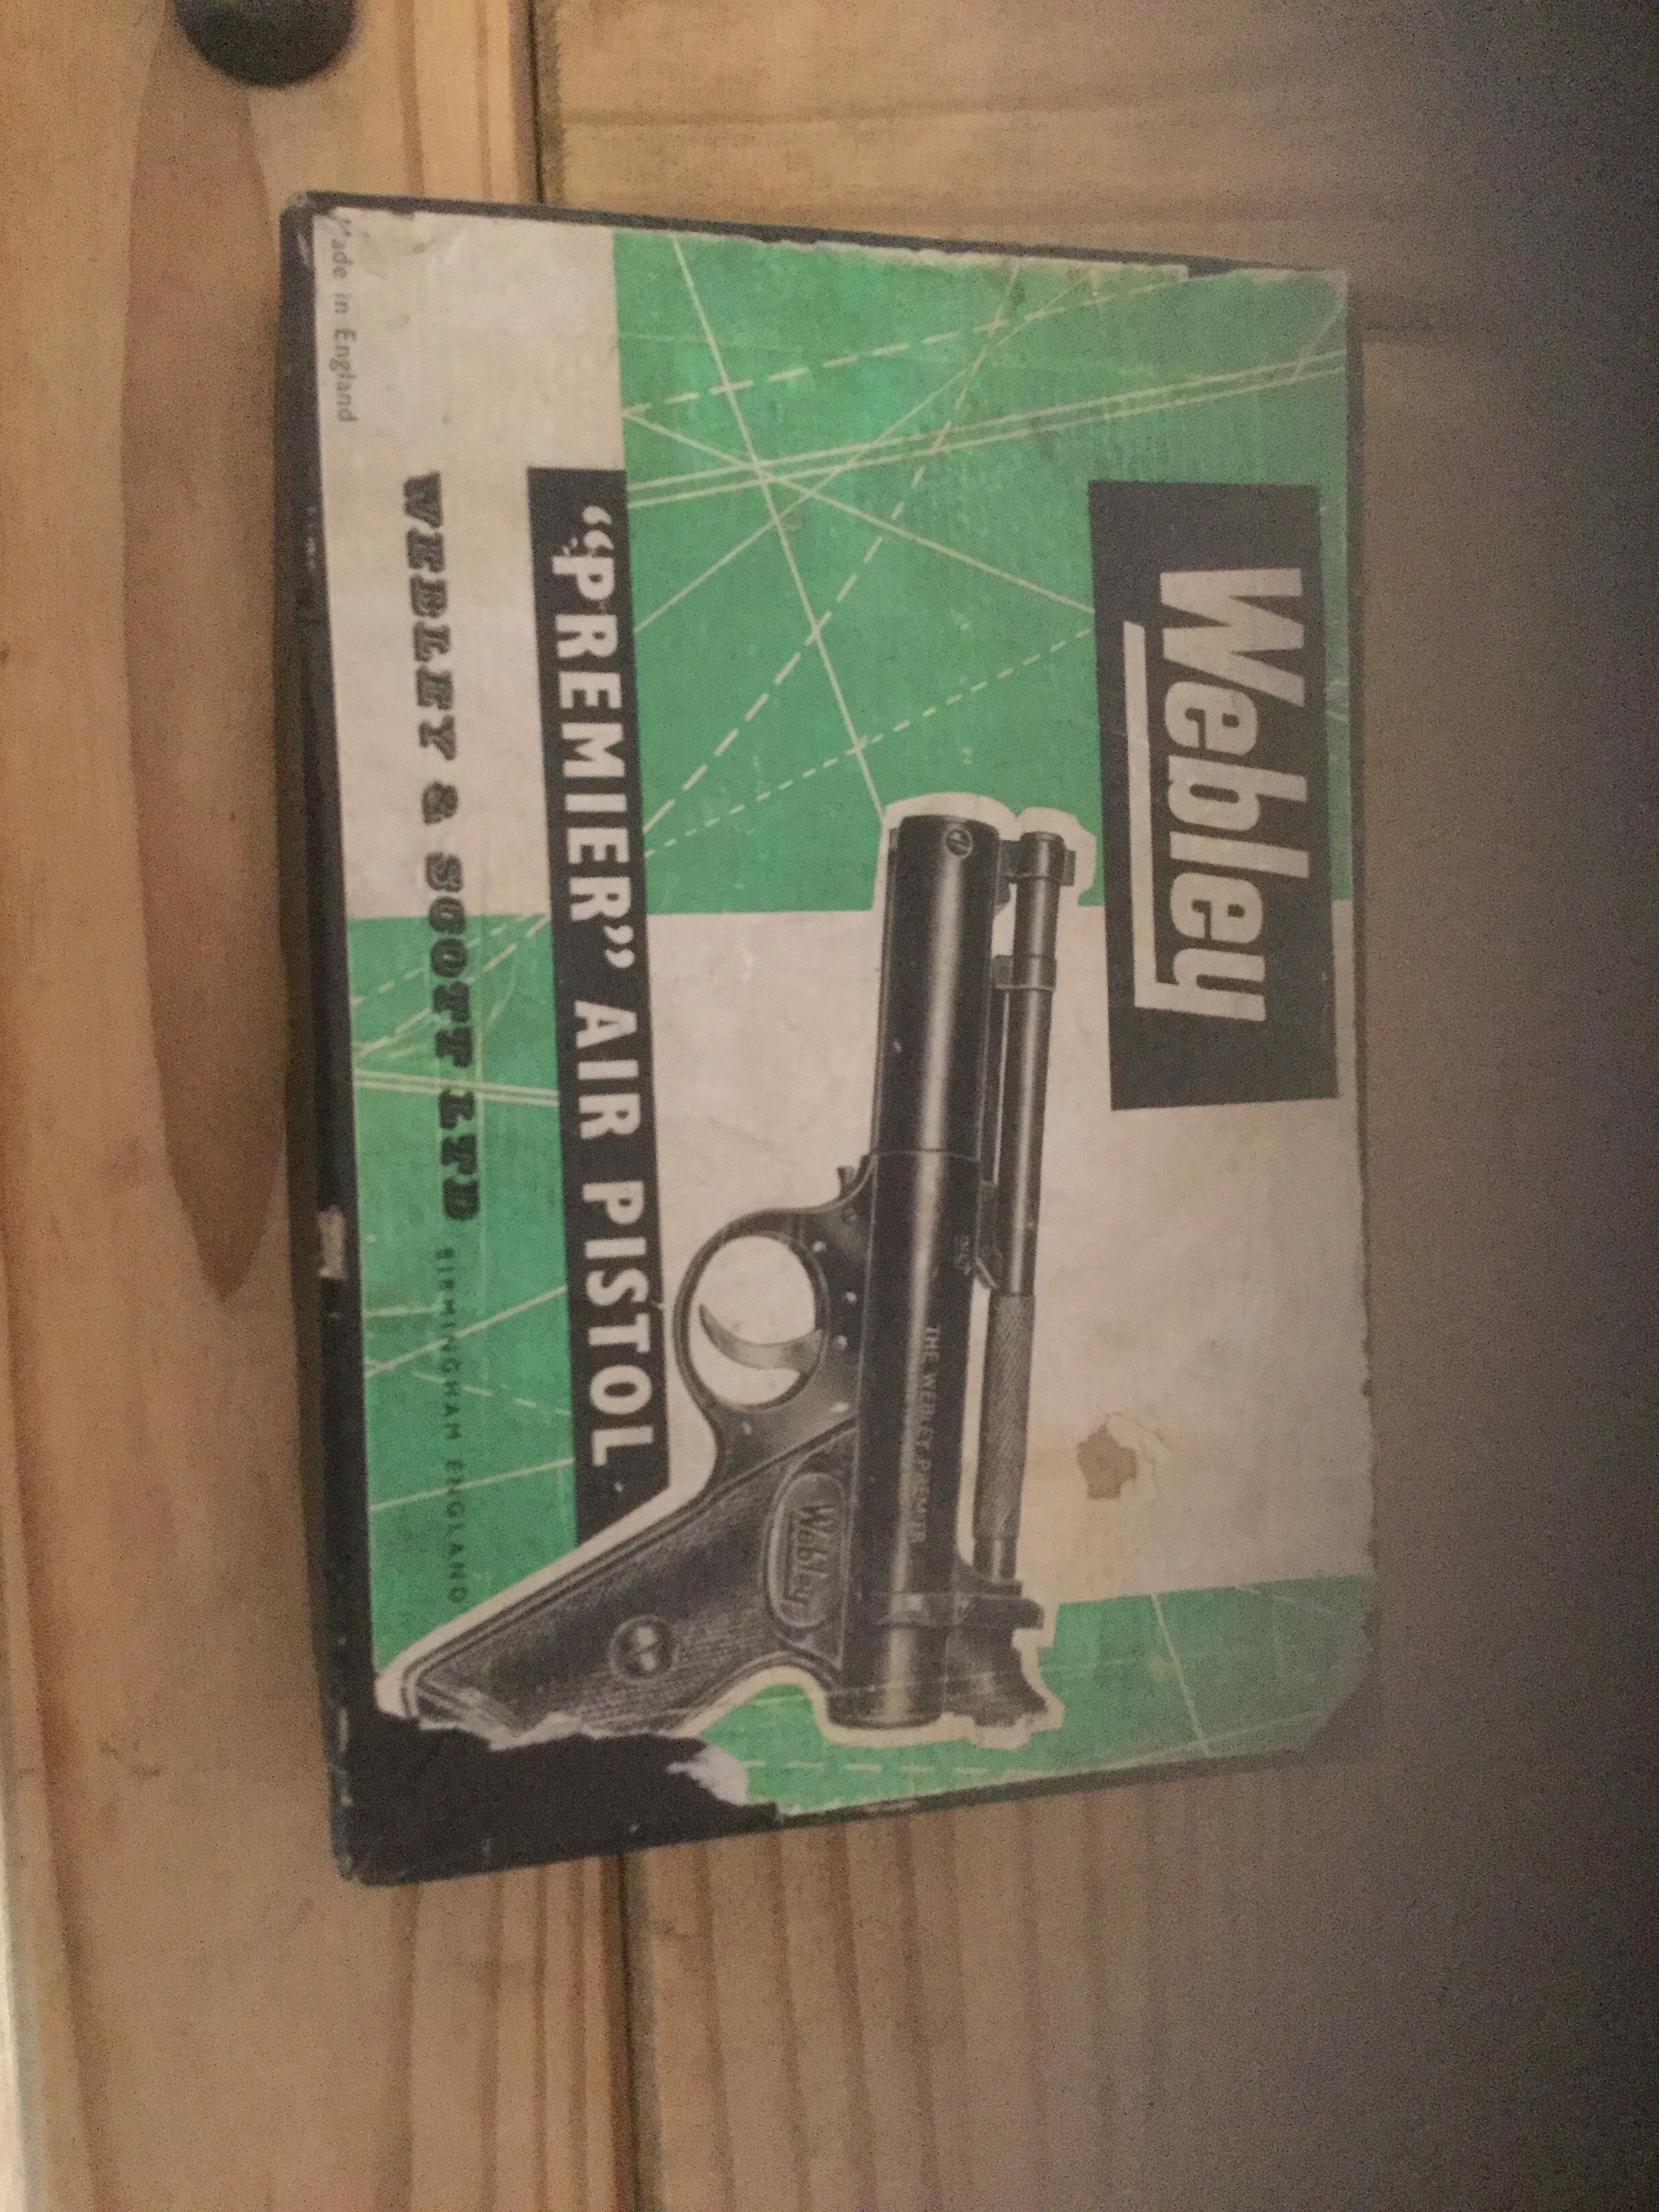 Webley premier 22 pistol